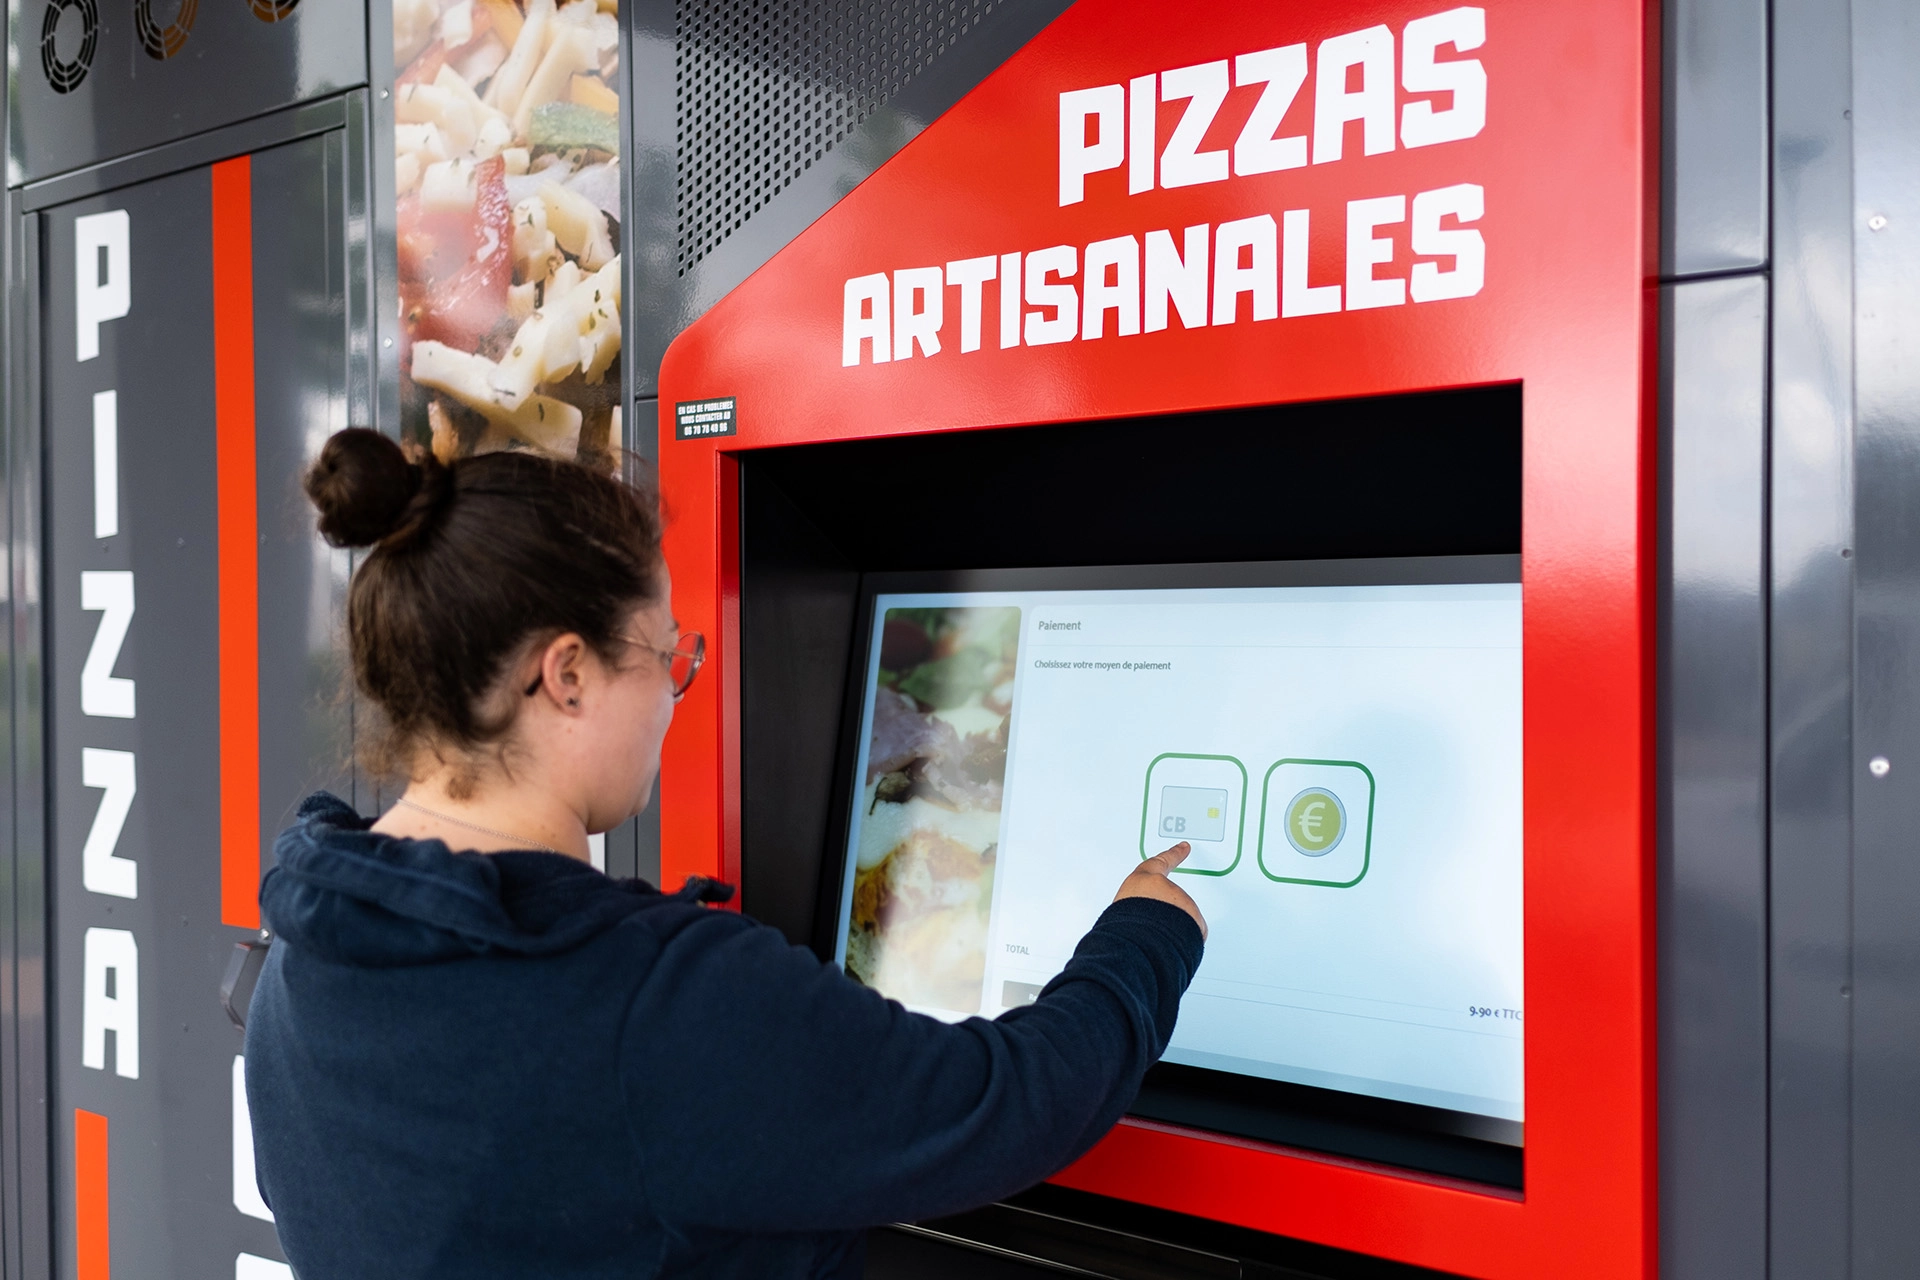 Pizza Casa c'est 2 distributeurs automatiques de pizzas artisanales dans les villes de Falaise et Trun, ainsi qu'un restaurant